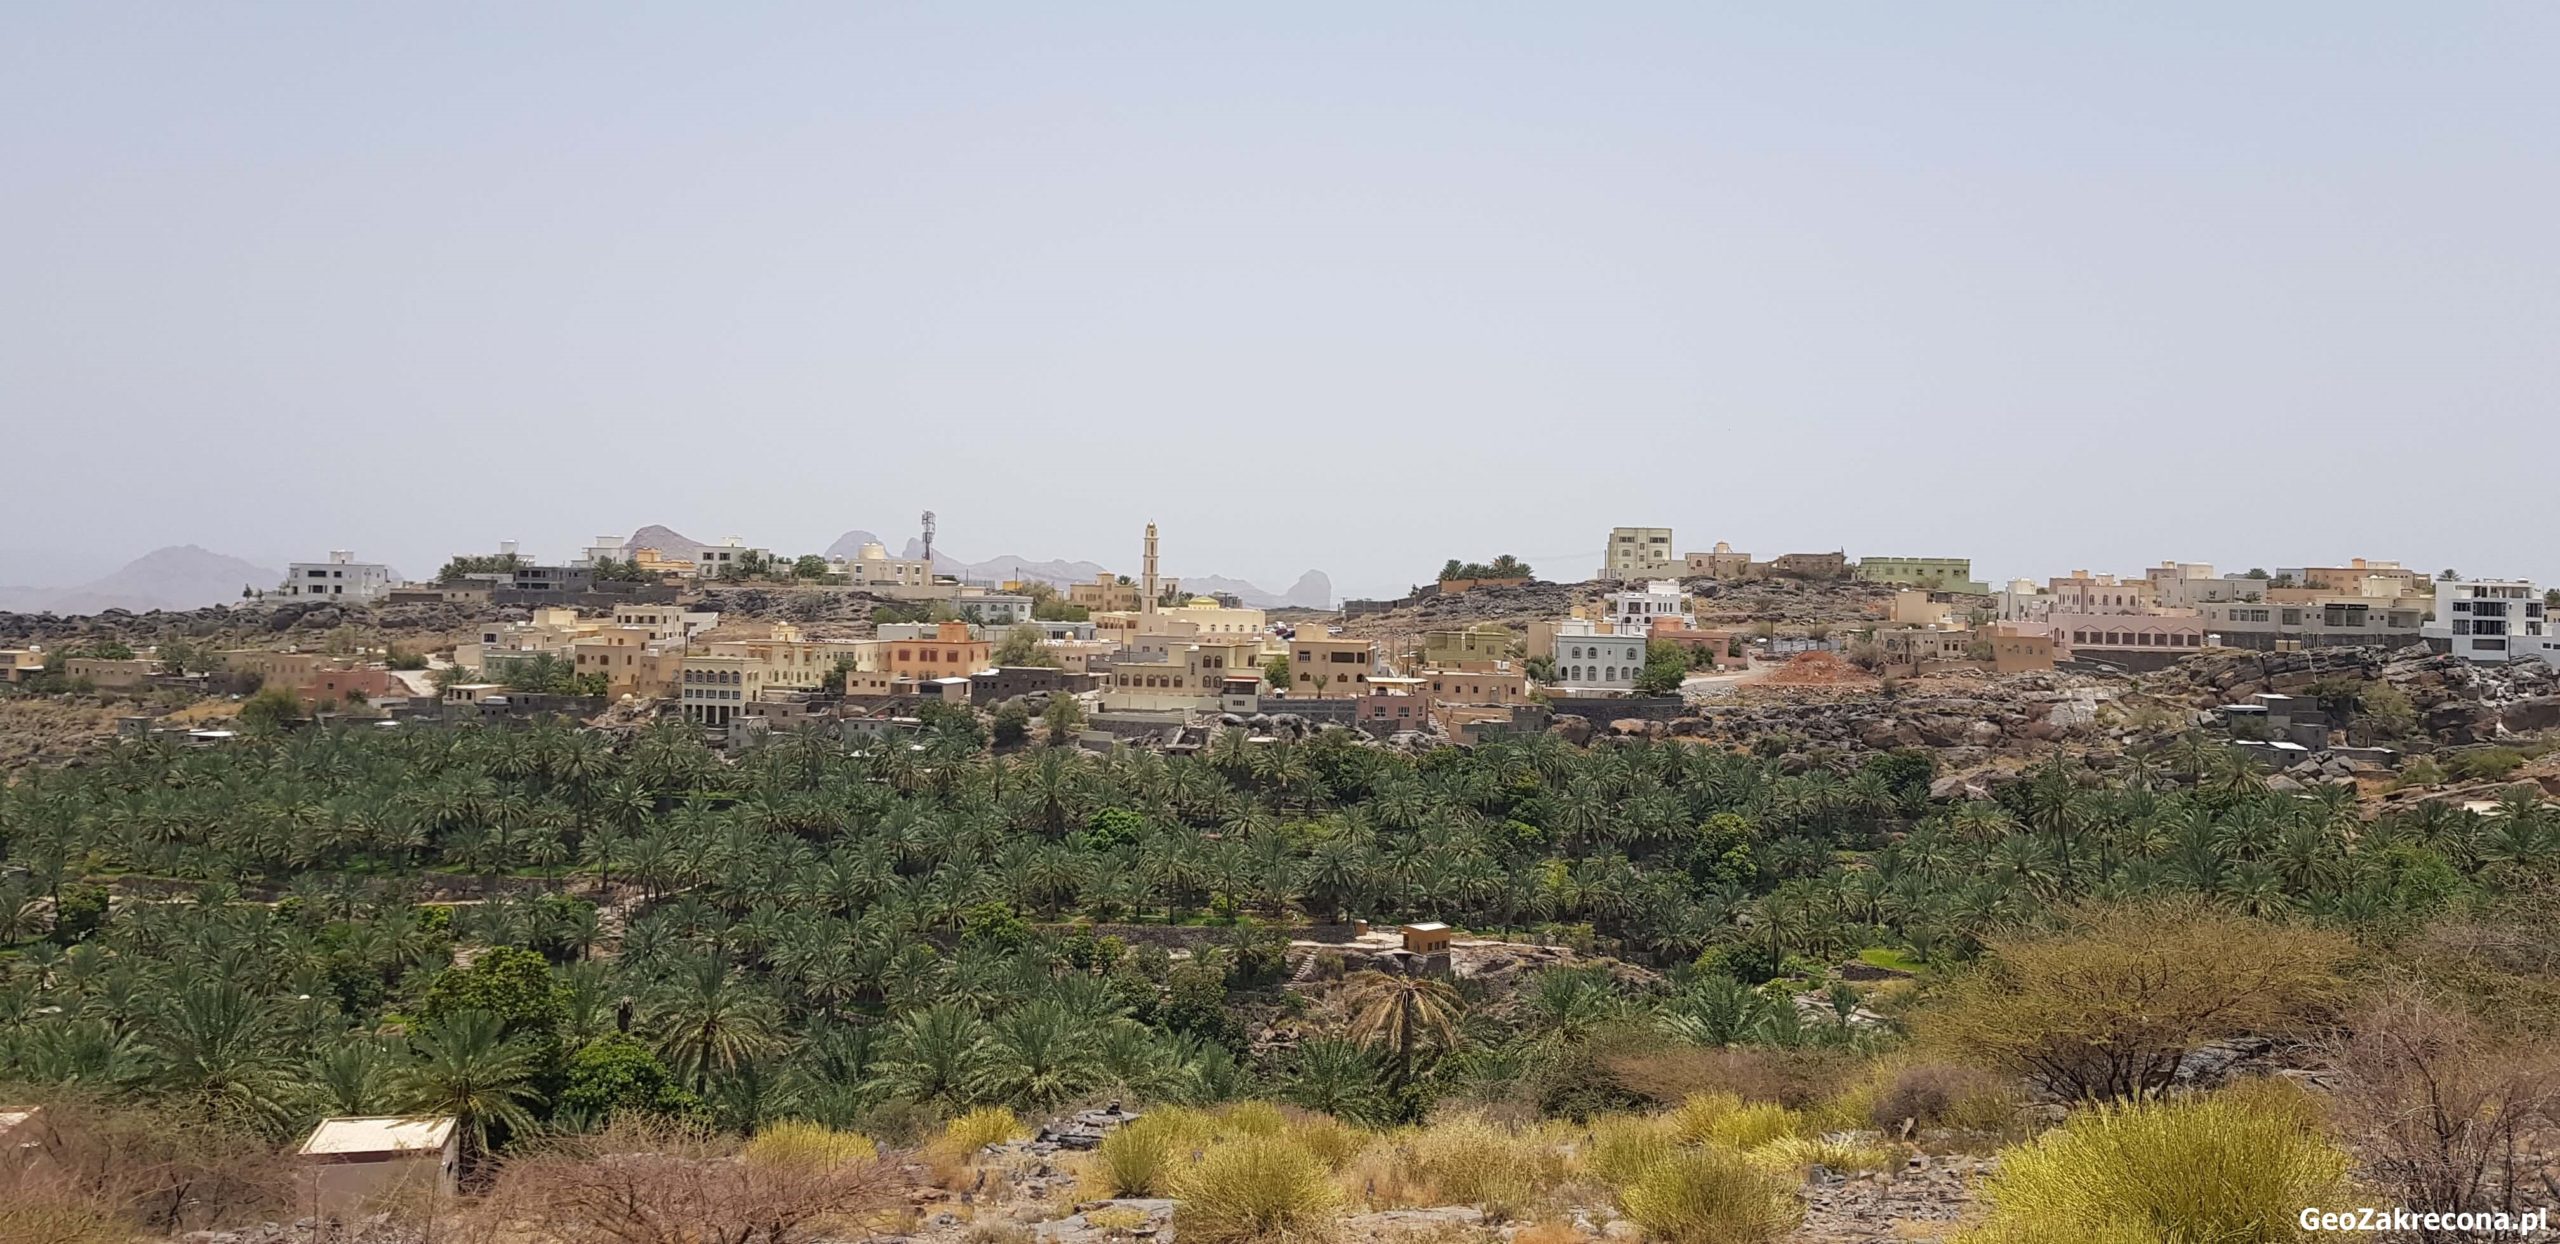 Oman górskie miasteczka